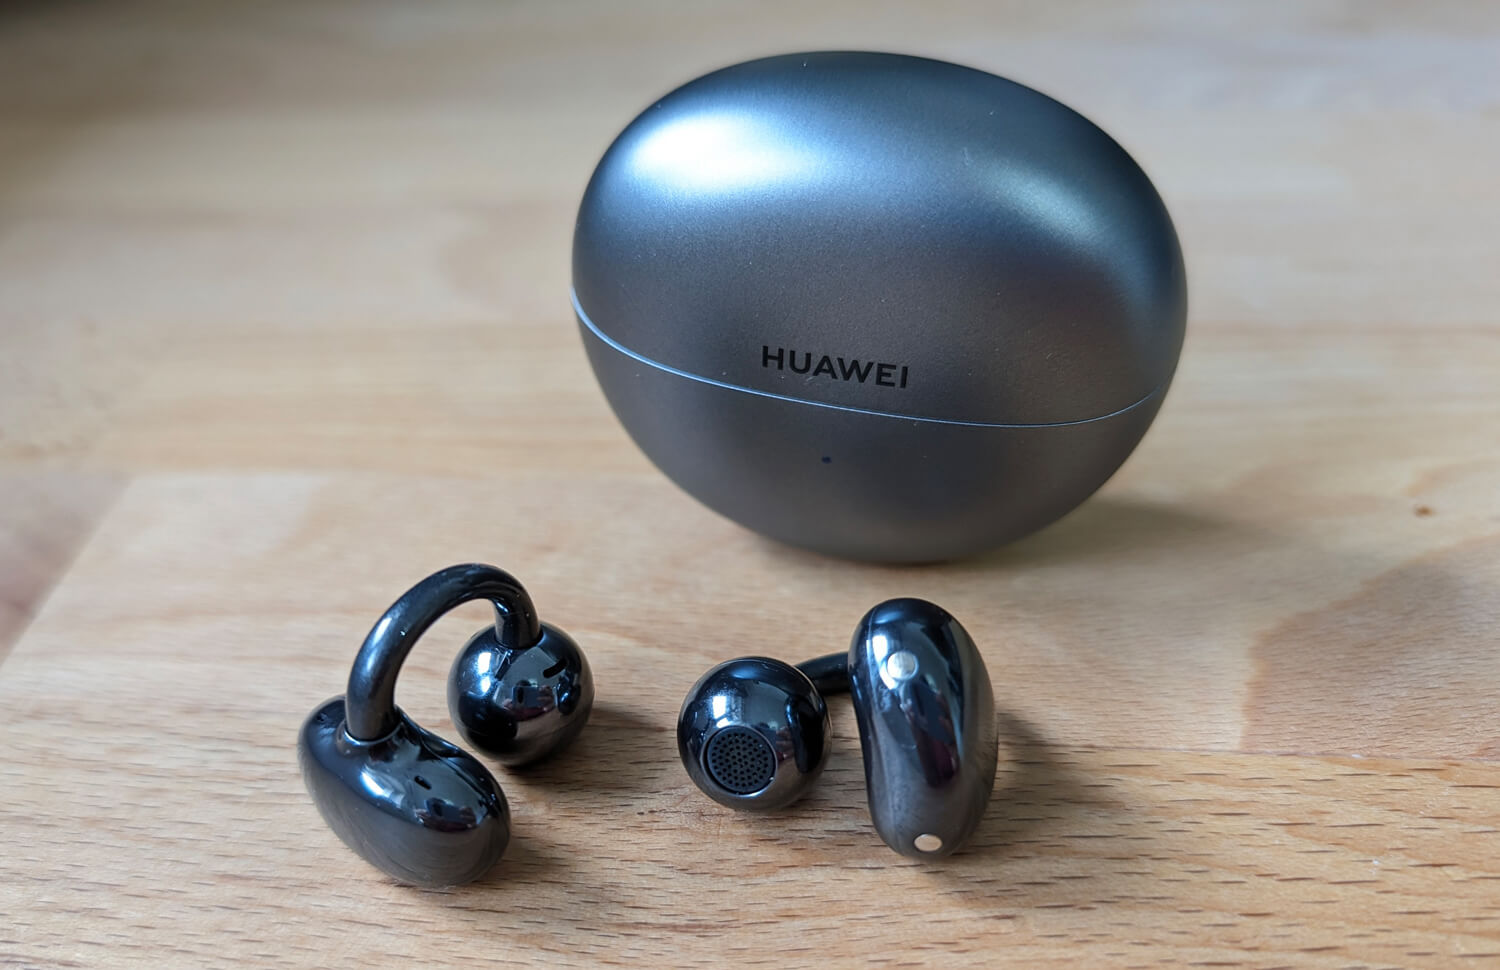 Huawei выпустила несколько интересных гаджетов, включая необычные наушники. Это только часть того, что показали на презентации. Фото.